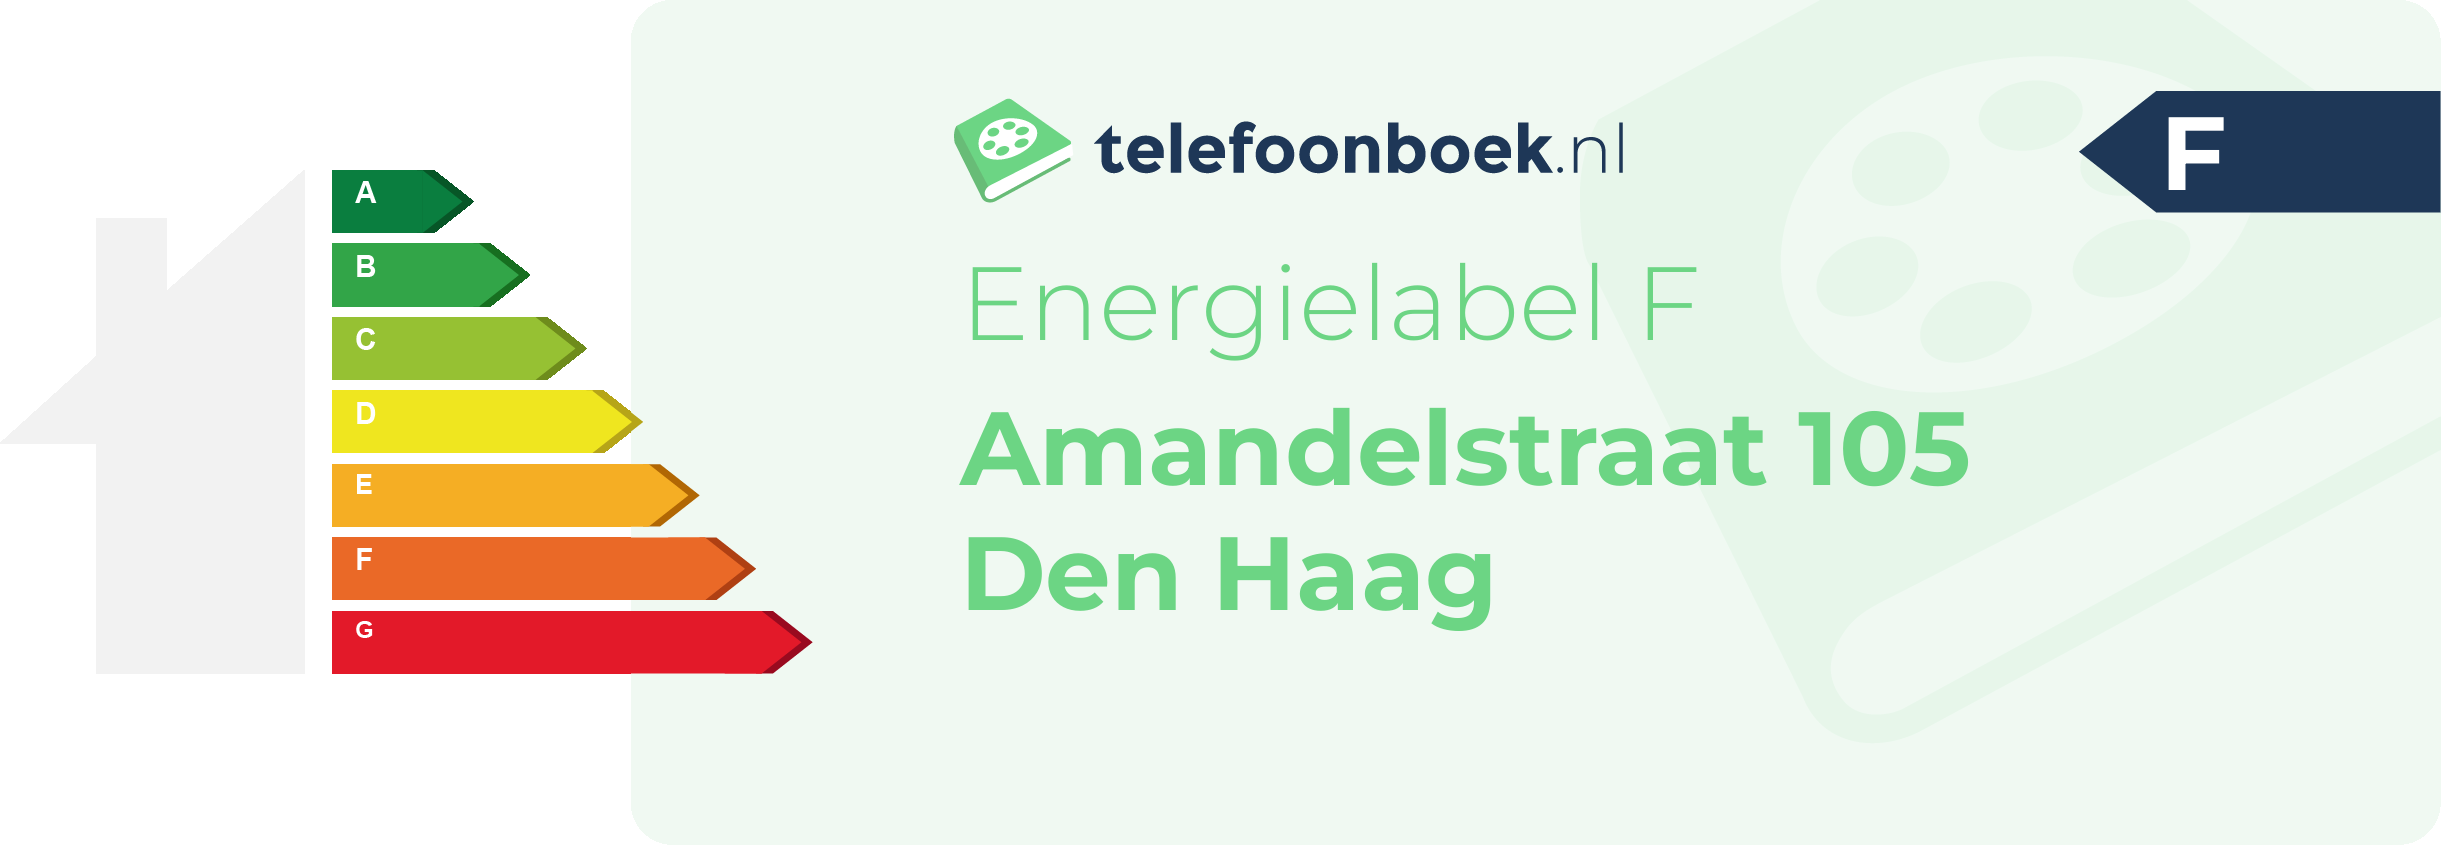 Energielabel Amandelstraat 105 Den Haag